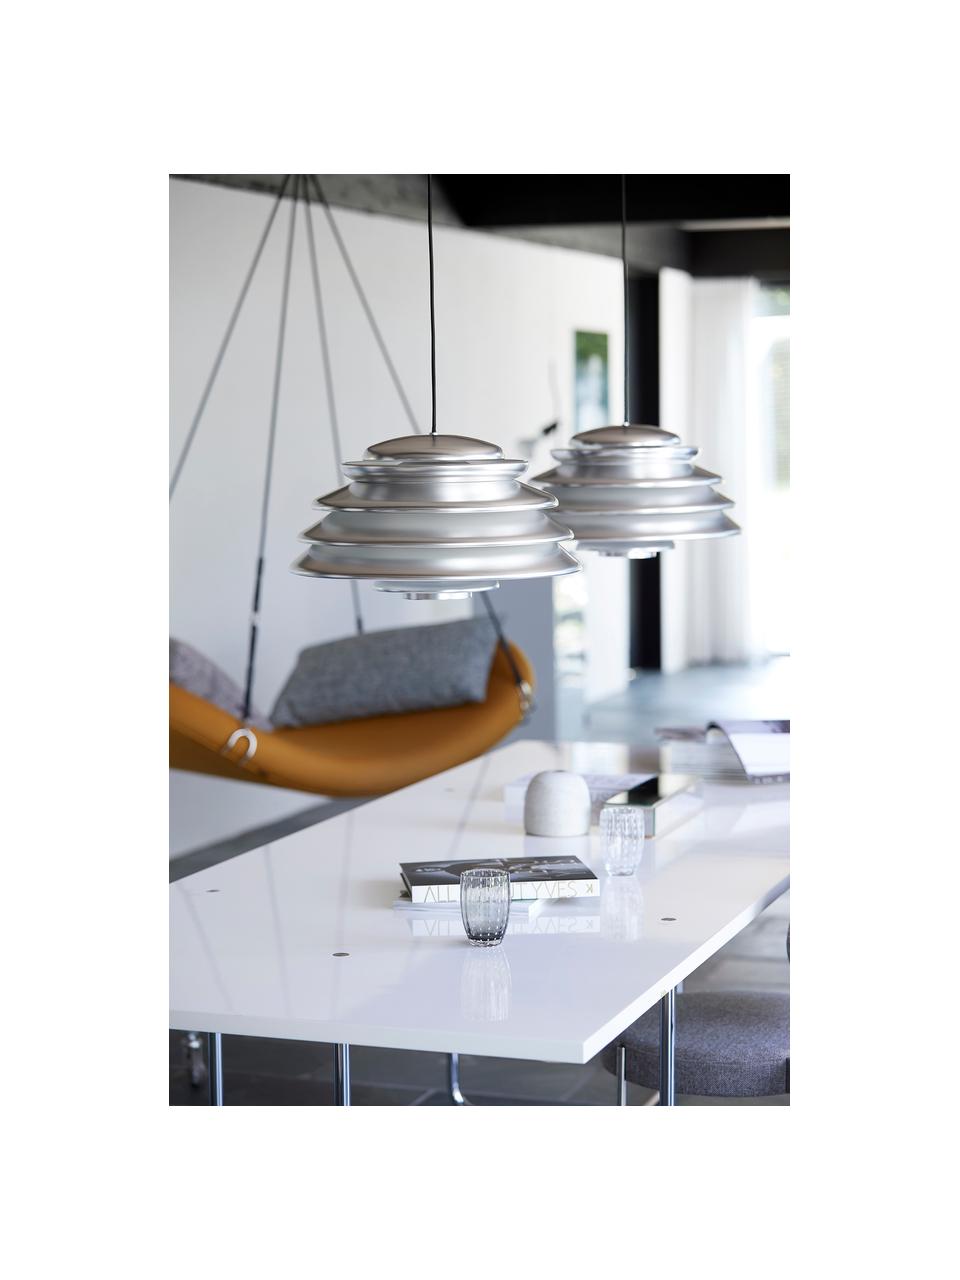 Lámpara de techo de diseño Hive, Pantalla: metal recubierto, Cable: cubierto en tela, Plateado, Ø 48 x Al 27 cm